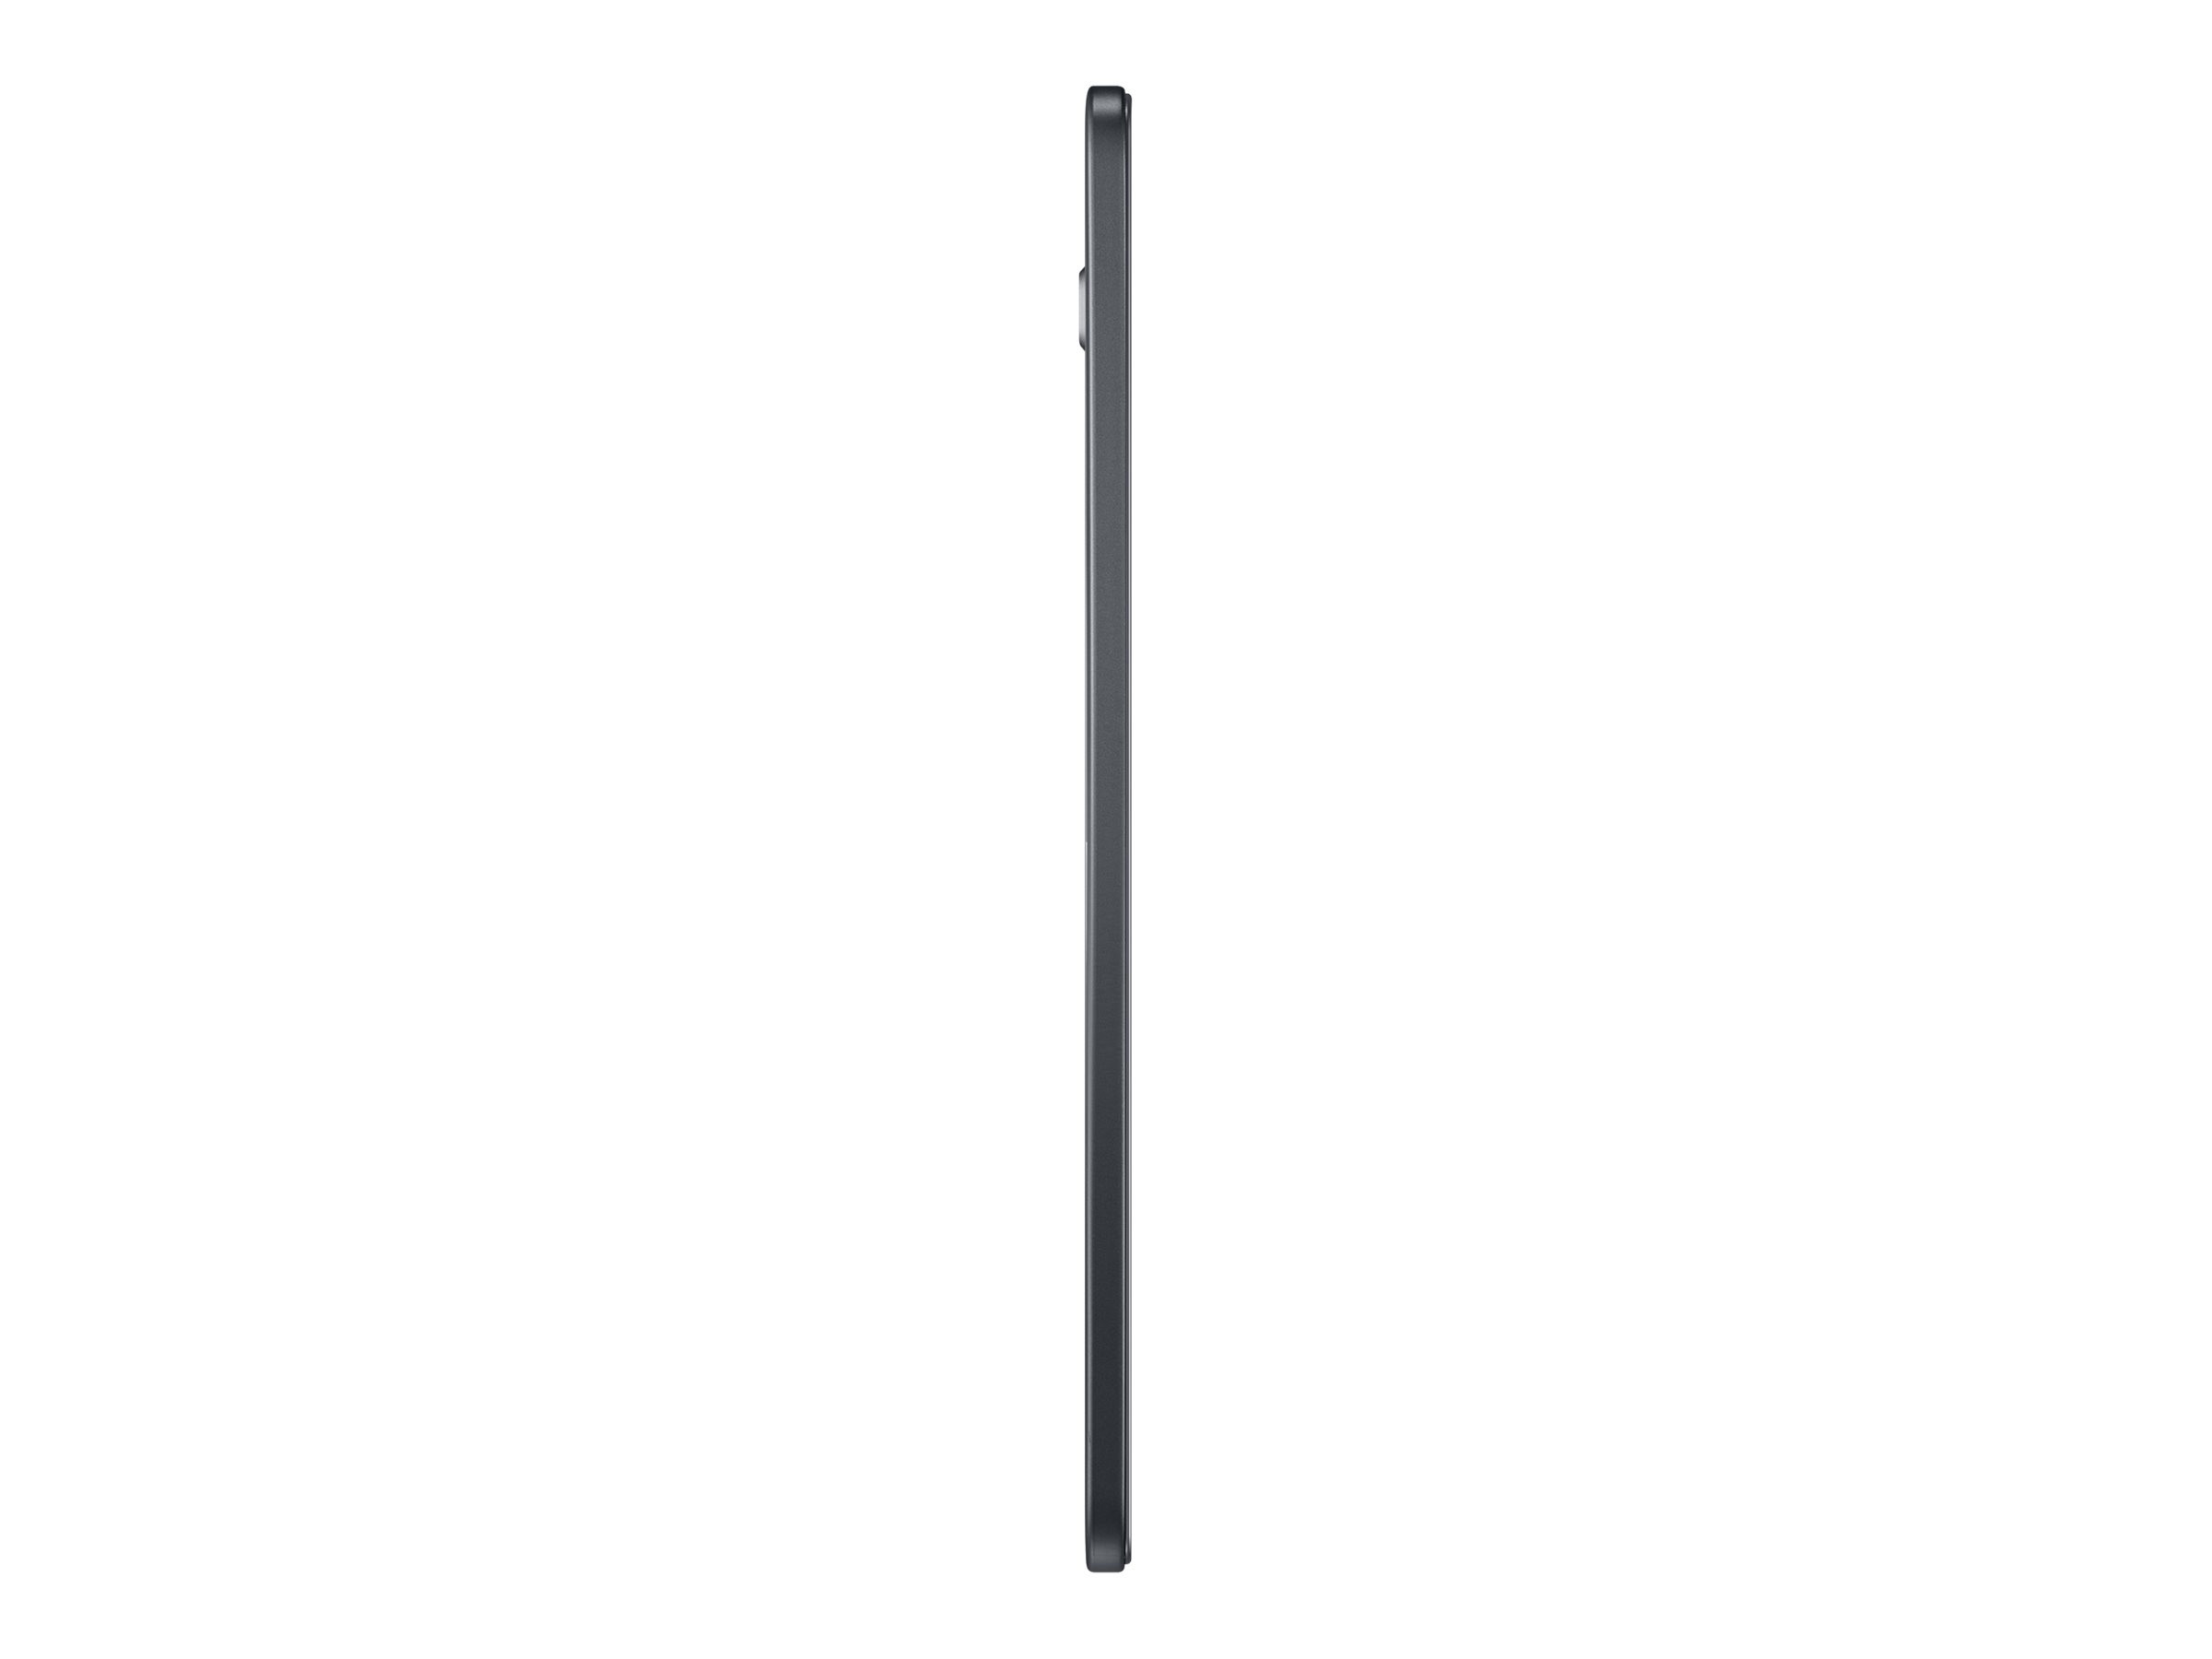 Samsung Galaxy Tab A T585 (2016) 10.1 Zoll 32GB Wifi LTE Android Full HD schwarz